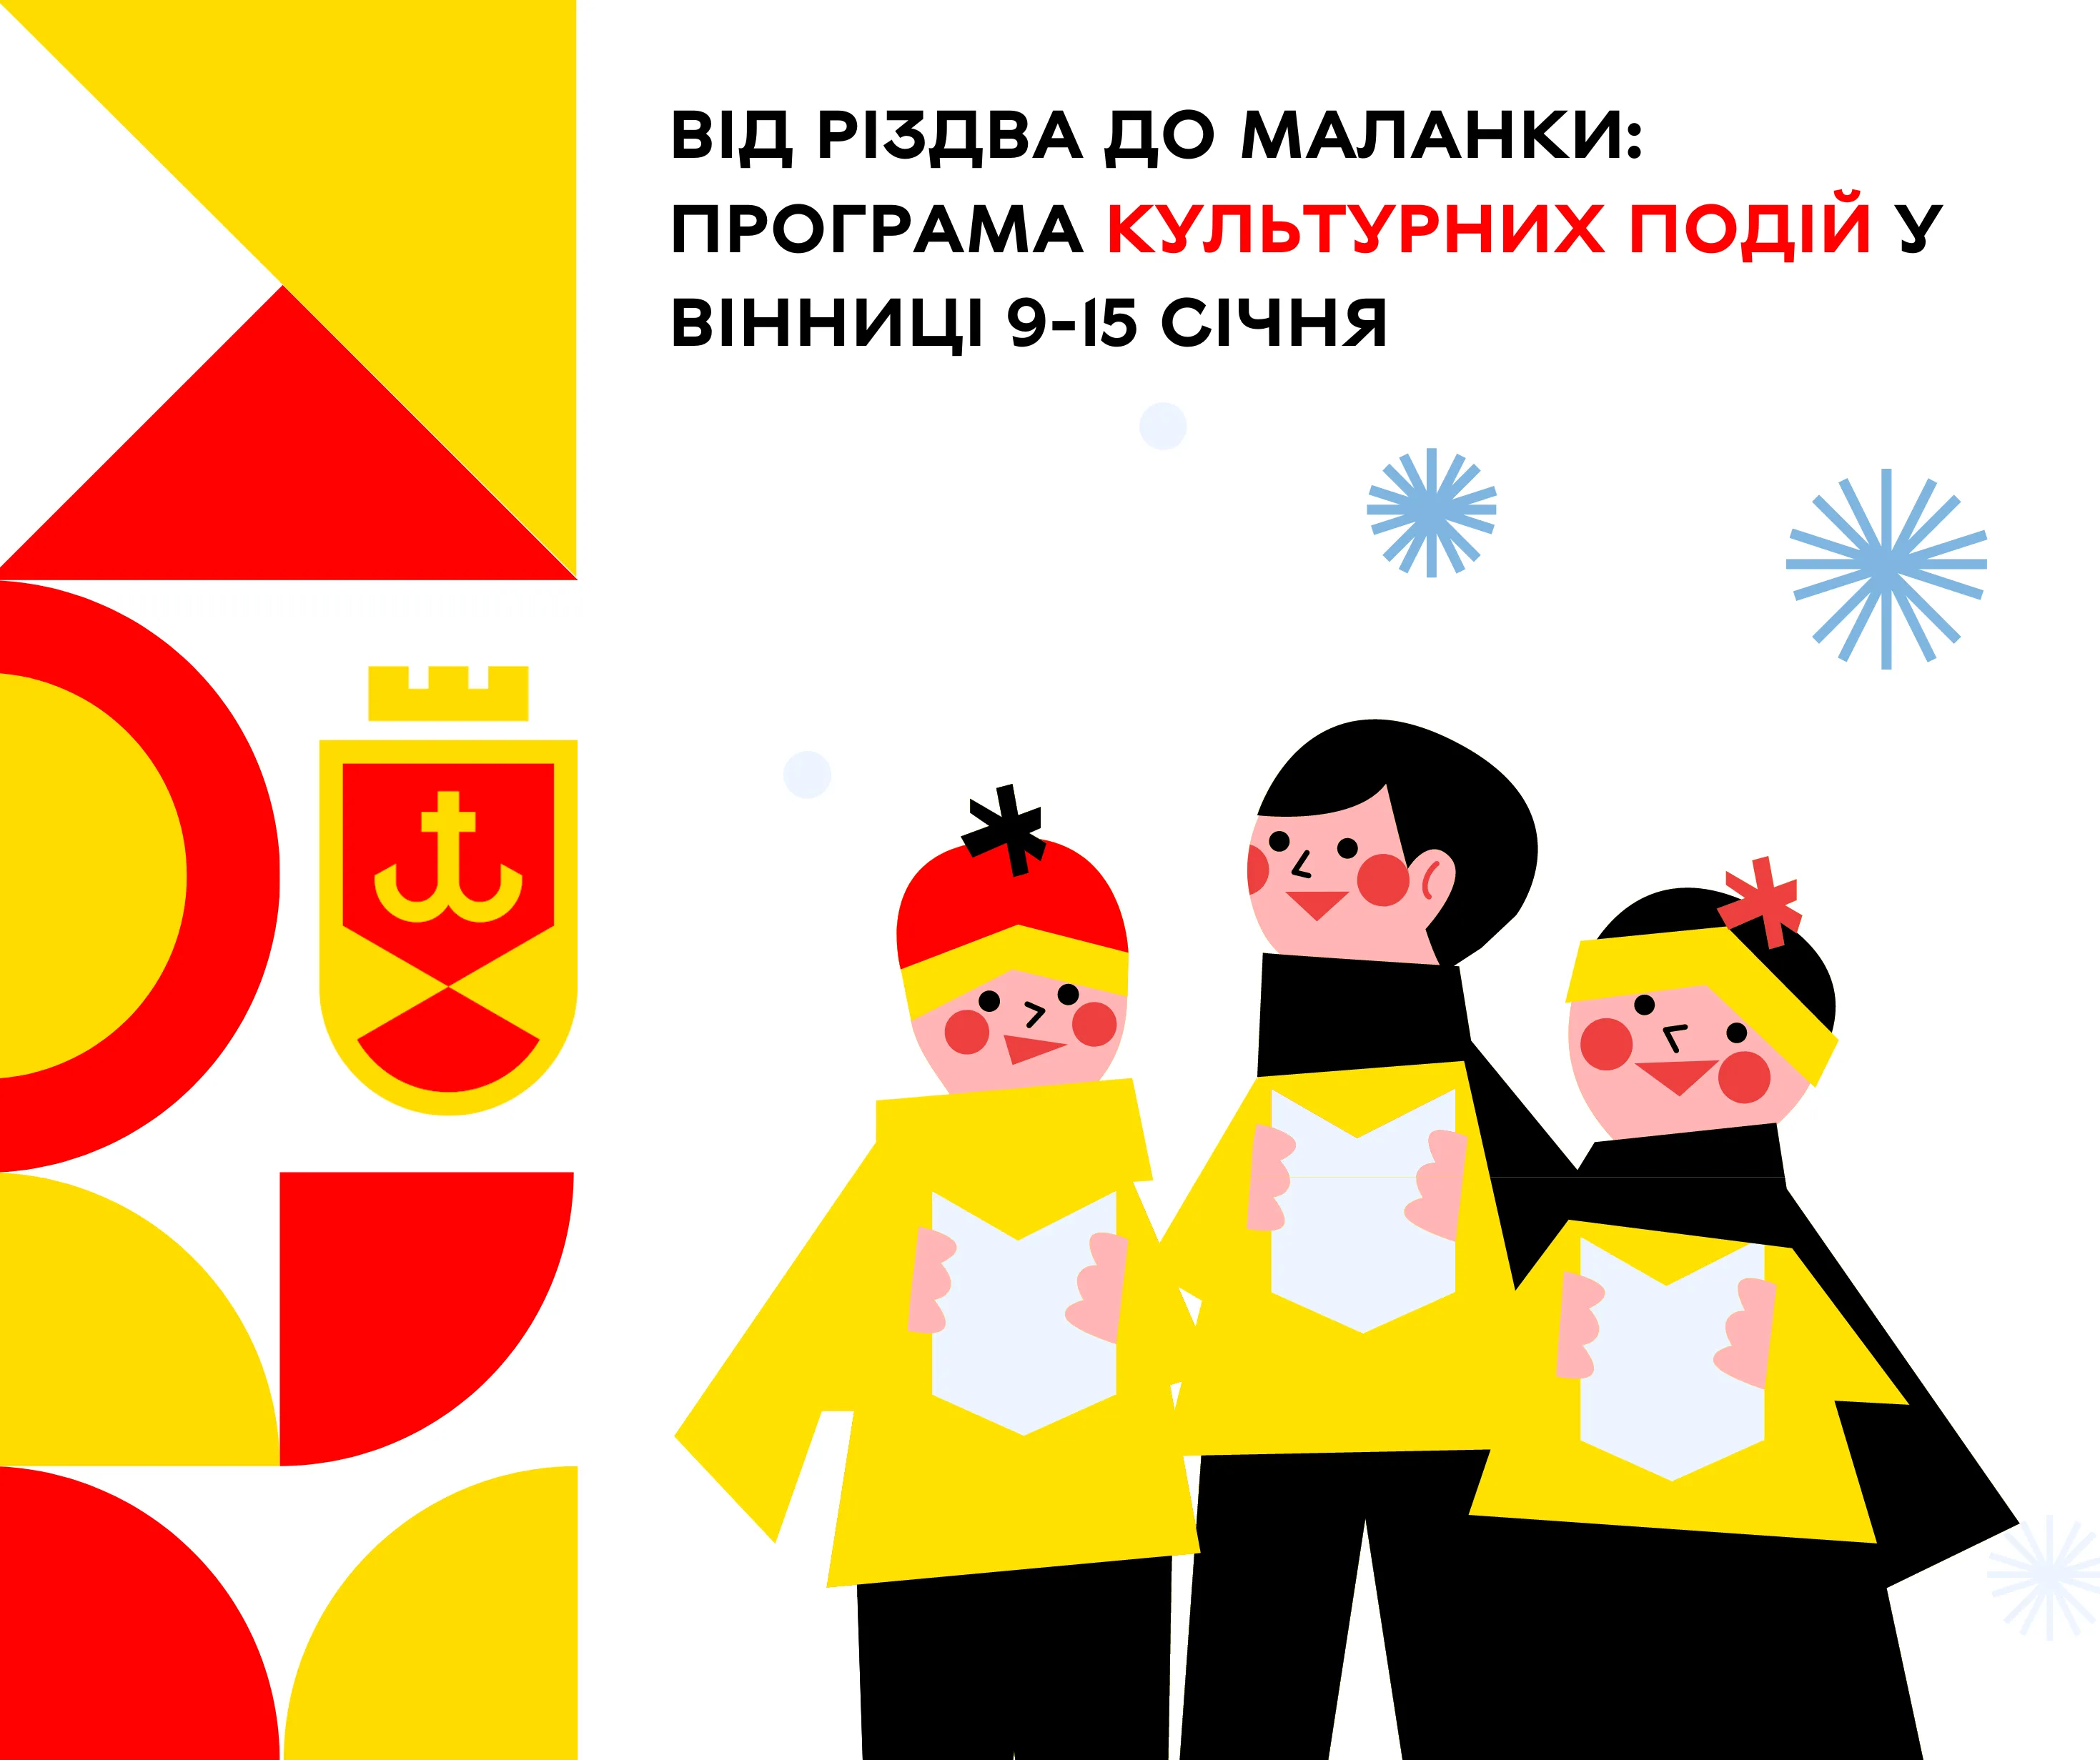 Від Різдва до Маланки: програма культурних подій у Вінниці 9-15 січня